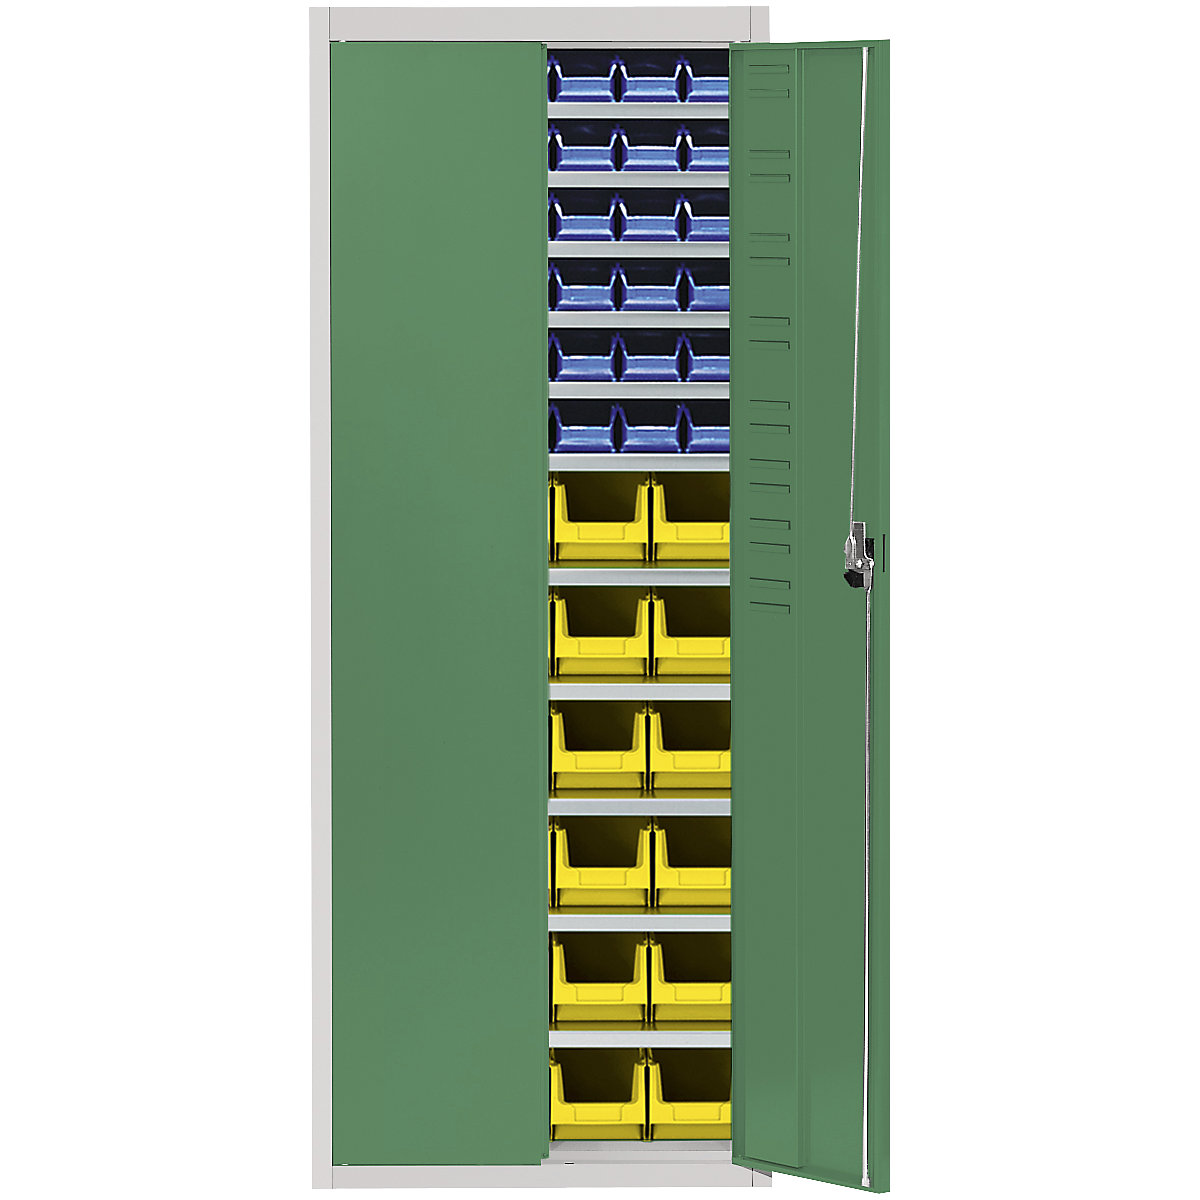 Magazijnkast met magazijnbakken – mauser, h x b x d = 1740 x 680 x 280 mm, tweekleurig, kastframe grijs, deuren groen, 60 bakken-6